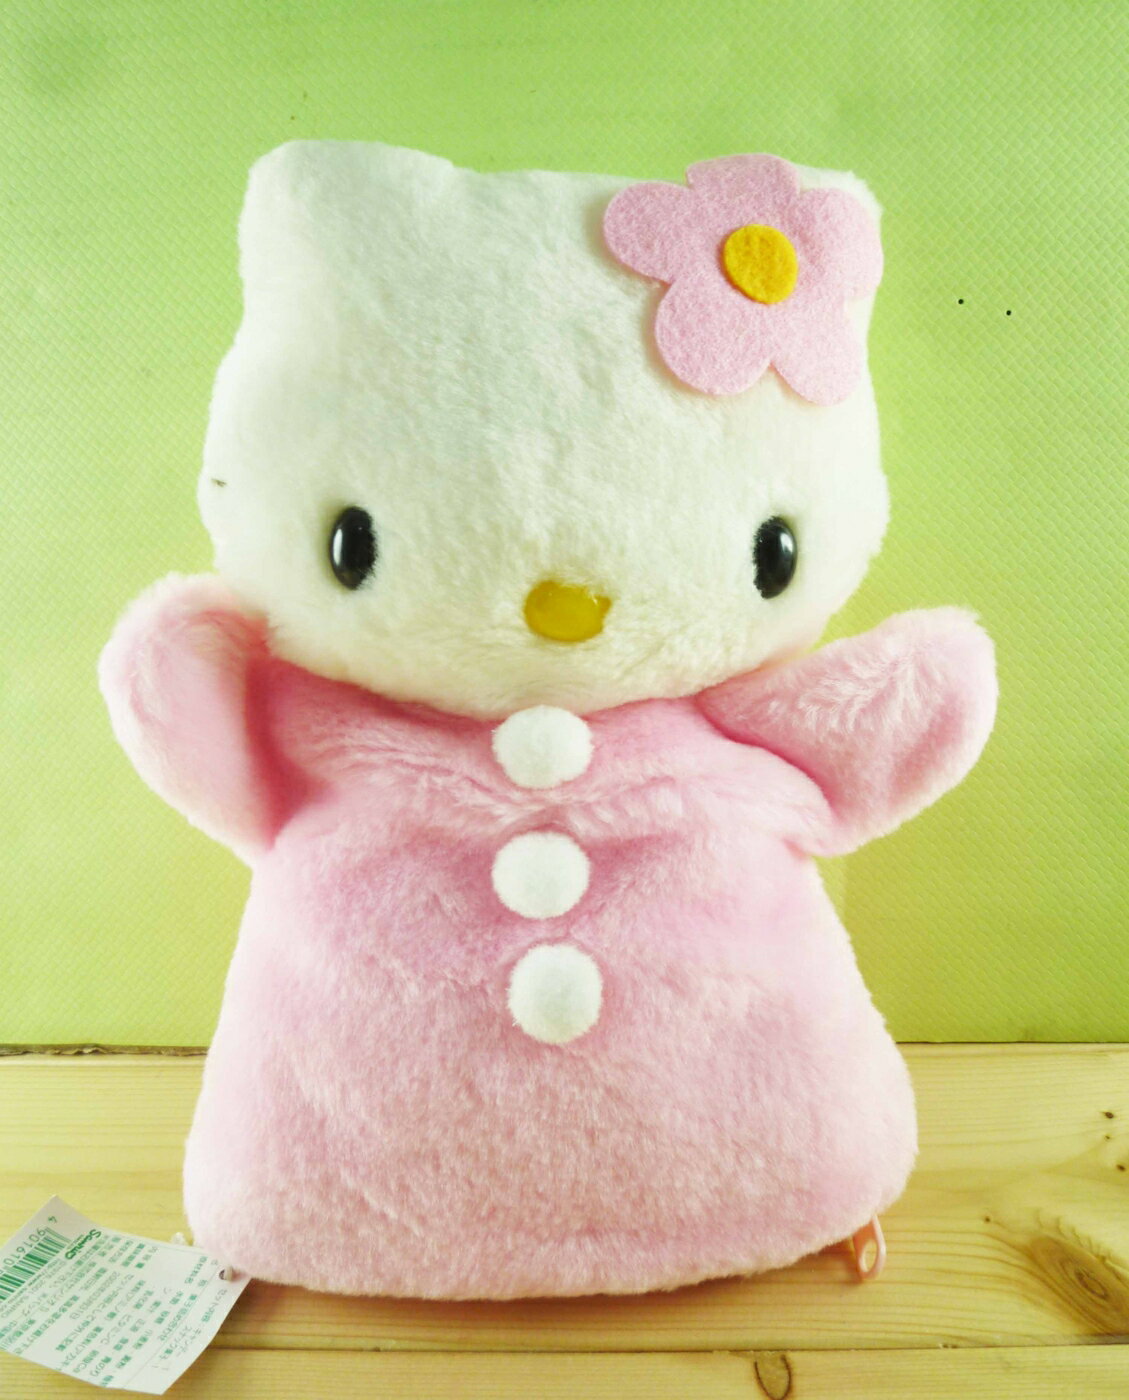 【震撼精品百貨】Hello Kitty 凱蒂貓 造型絨毛手偶-粉 震撼日式精品百貨